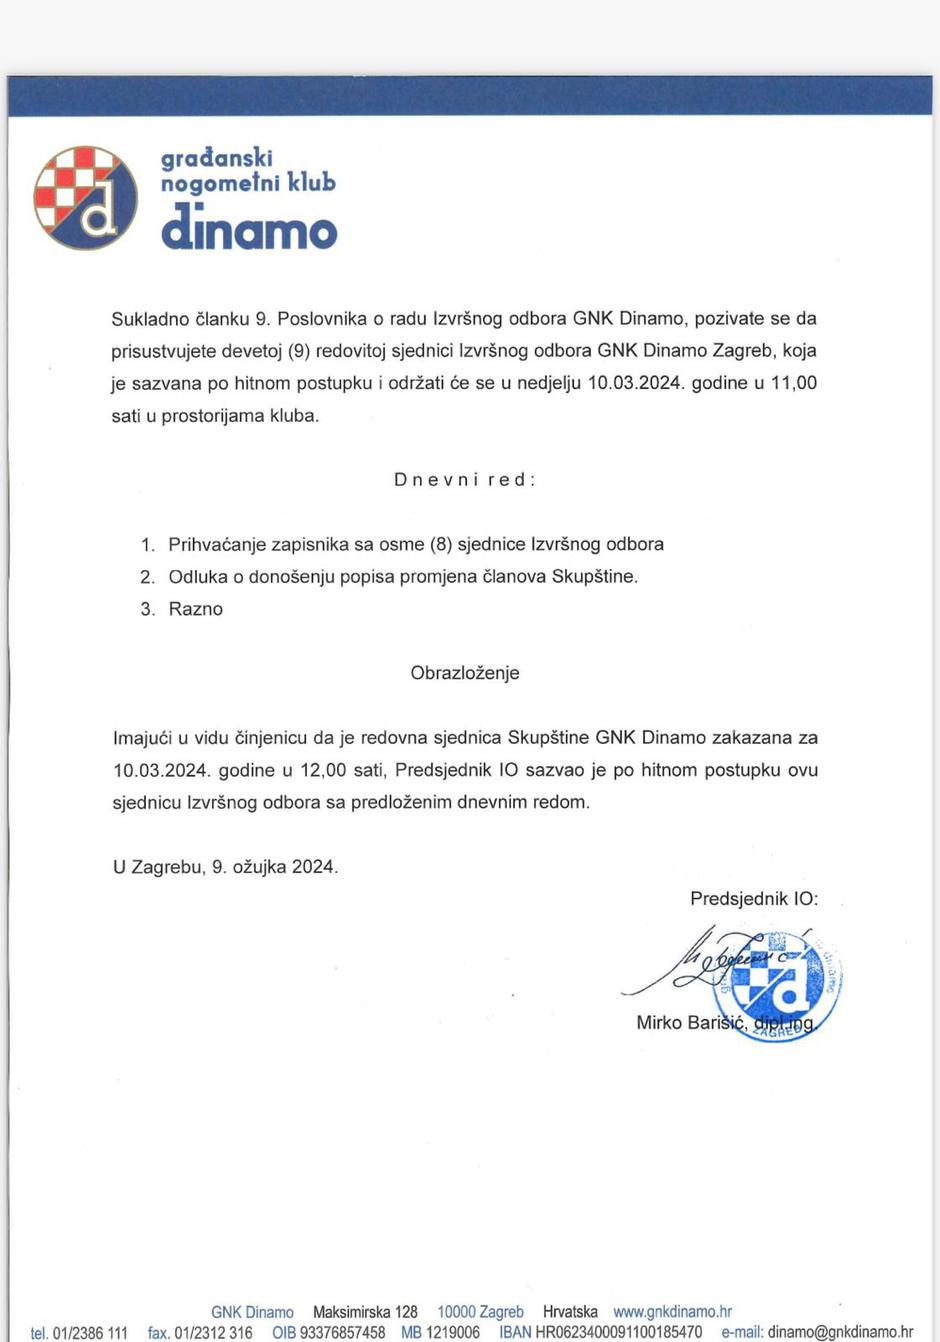 Dinamo dokument